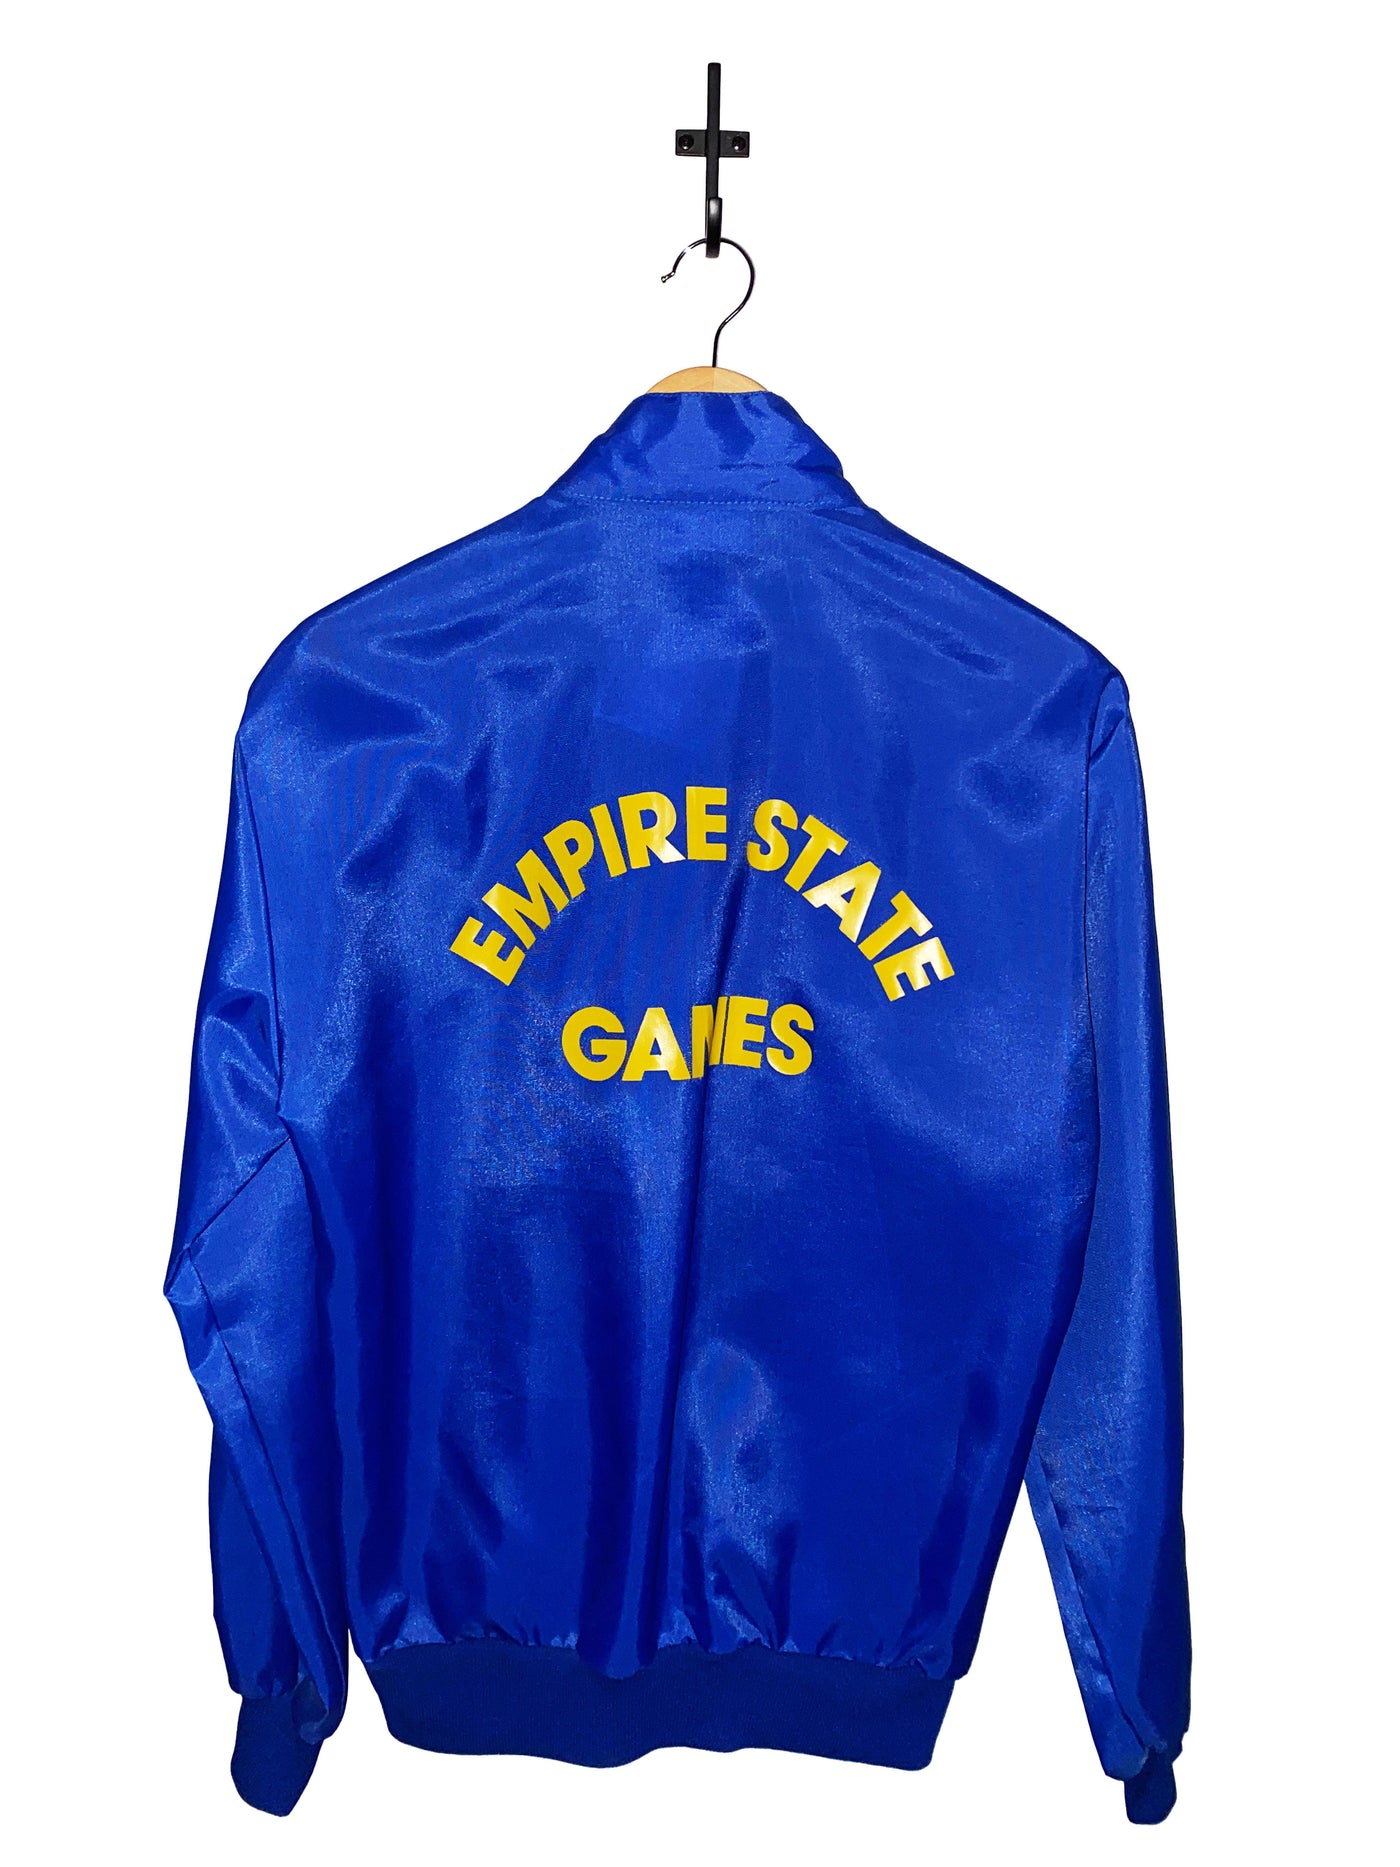 Vintage 1990 Empire State Games Bomber Jacket